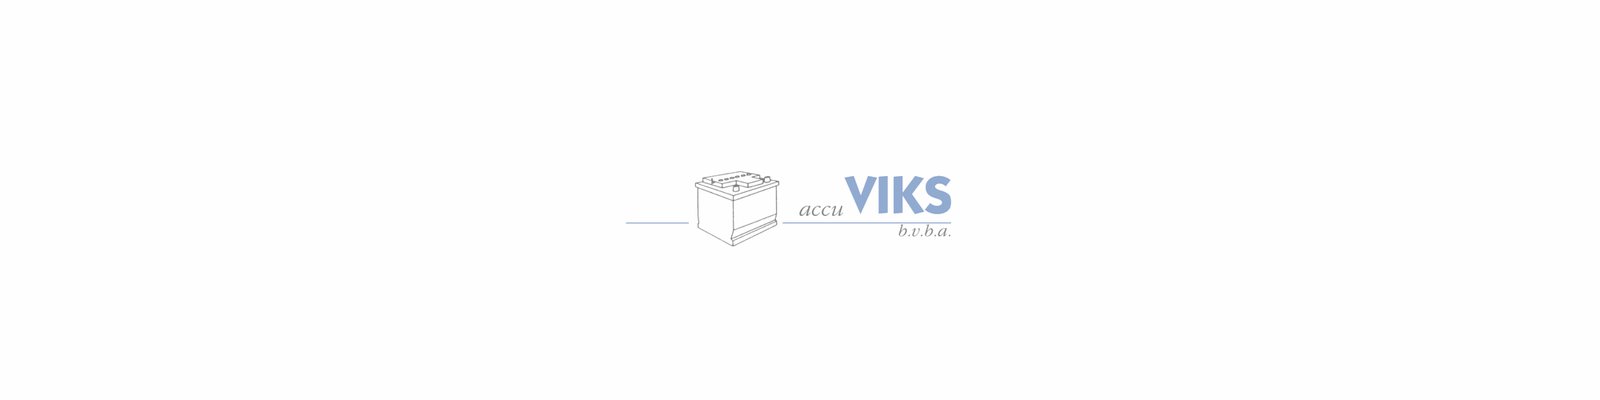 Accu_Viks_logo (1).jpg